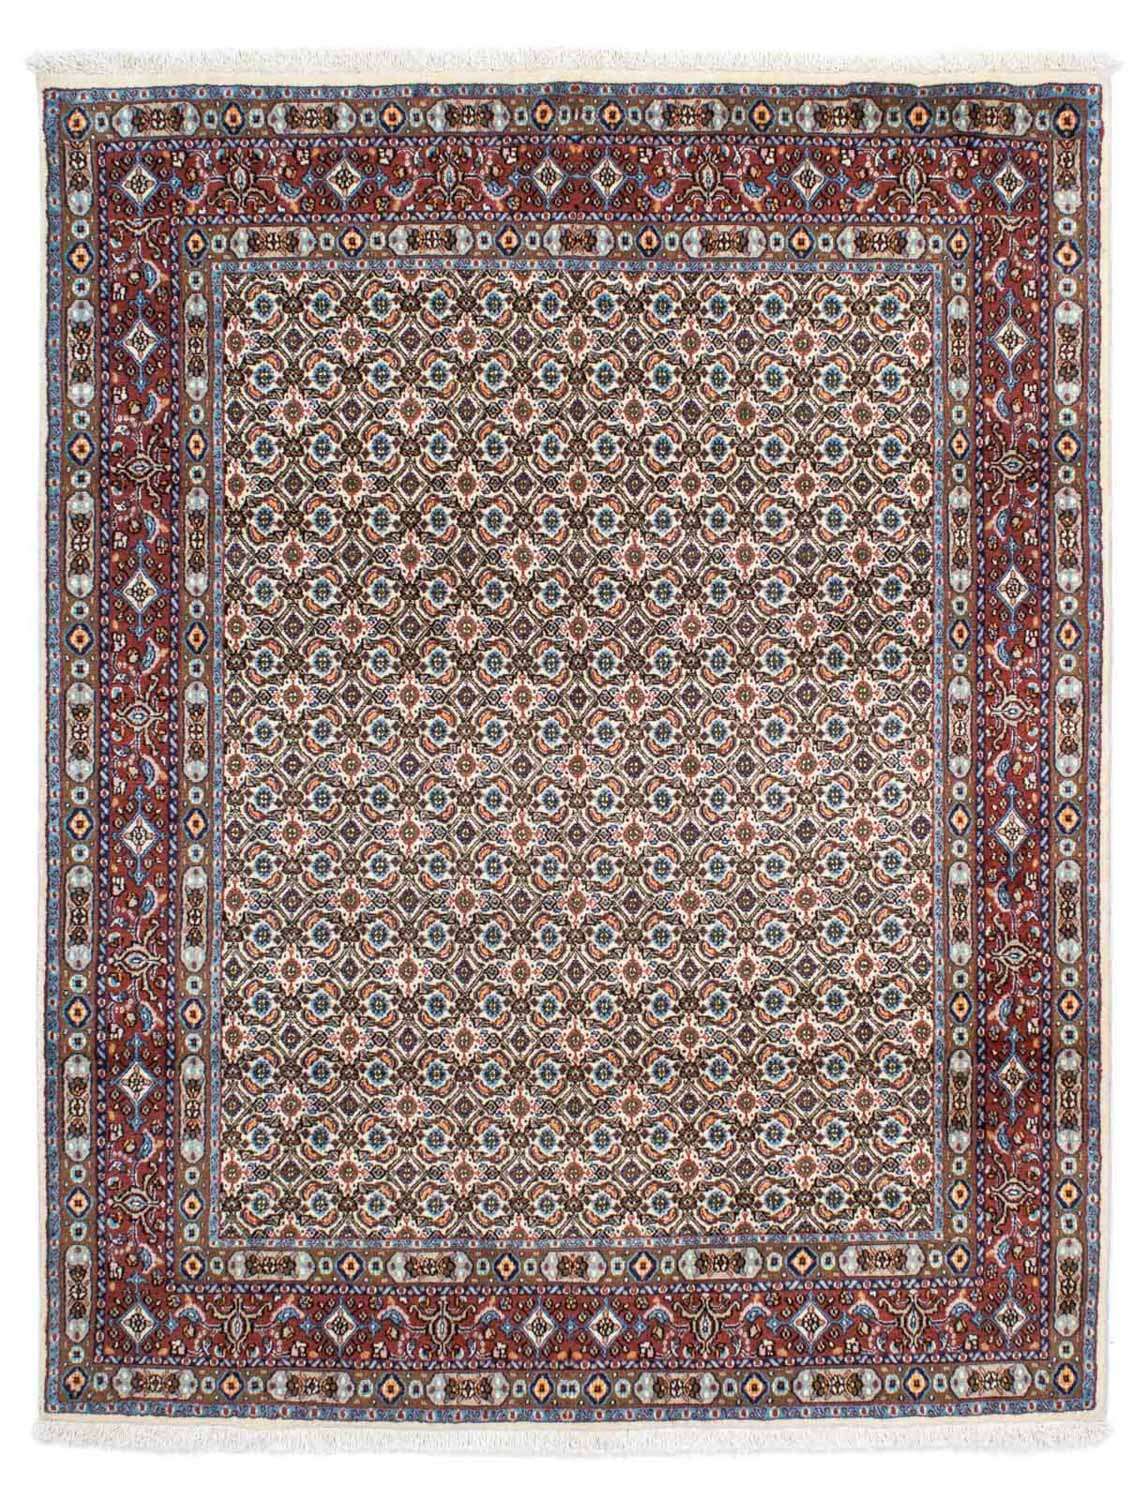 Perzisch tapijt - Klassiek - 196 x 147 cm - beige